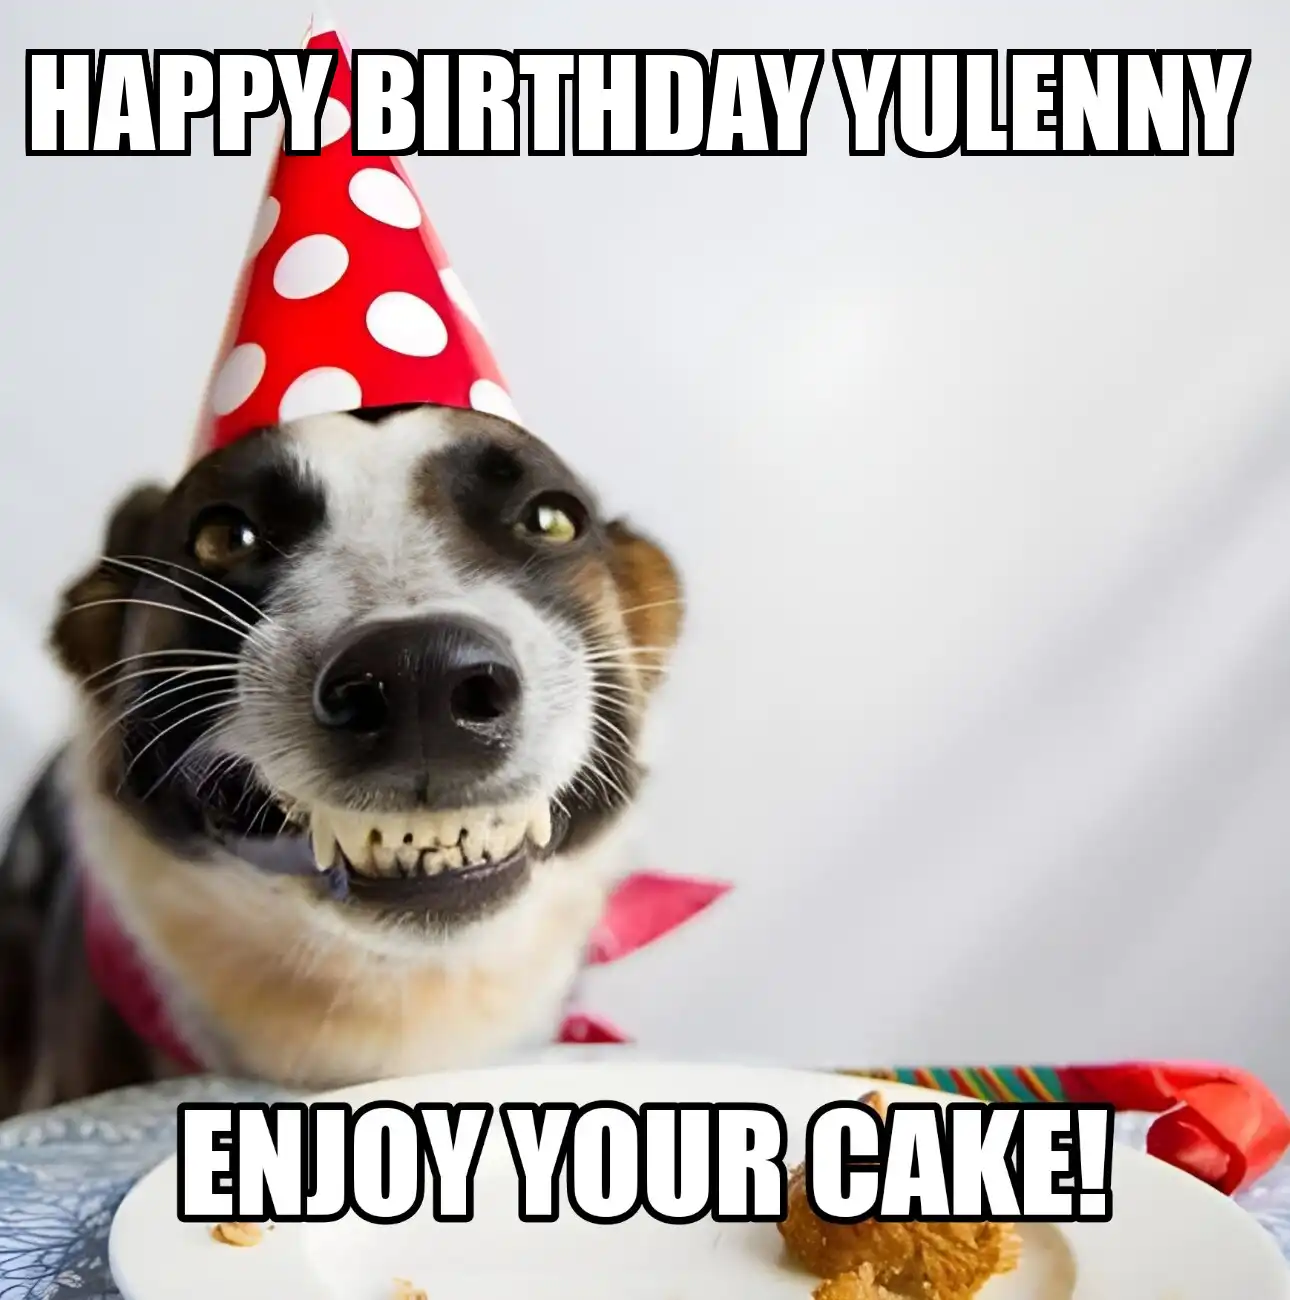 Happy Birthday Yulenny Enjoy Your Cake Dog Meme